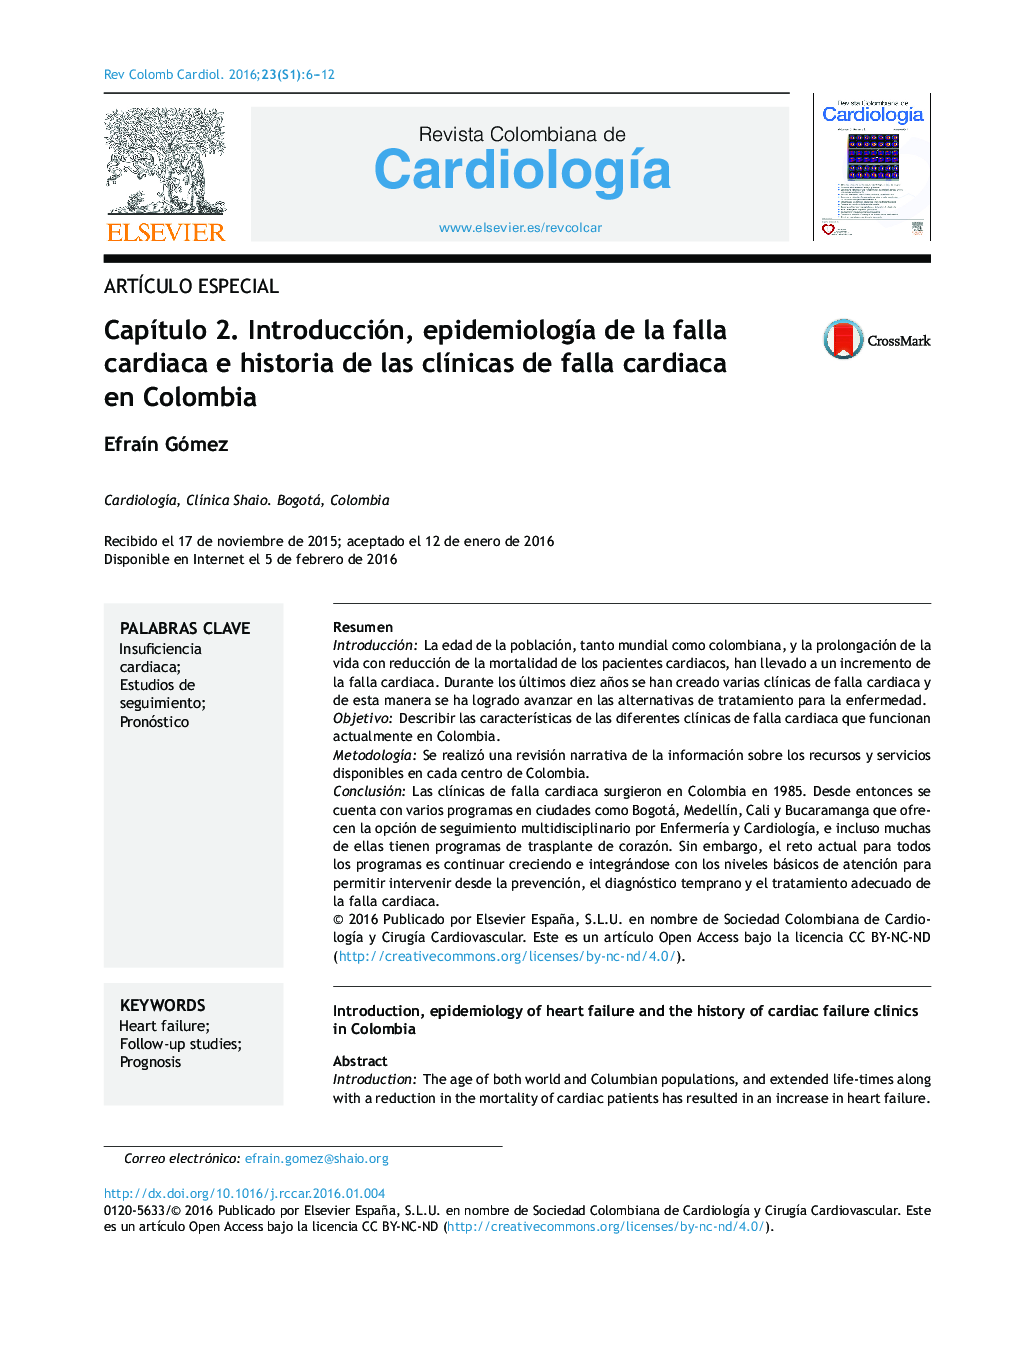 Capítulo 2. Introducción, epidemiología de la falla cardiaca e historia de las clínicas de falla cardiaca en Colombia